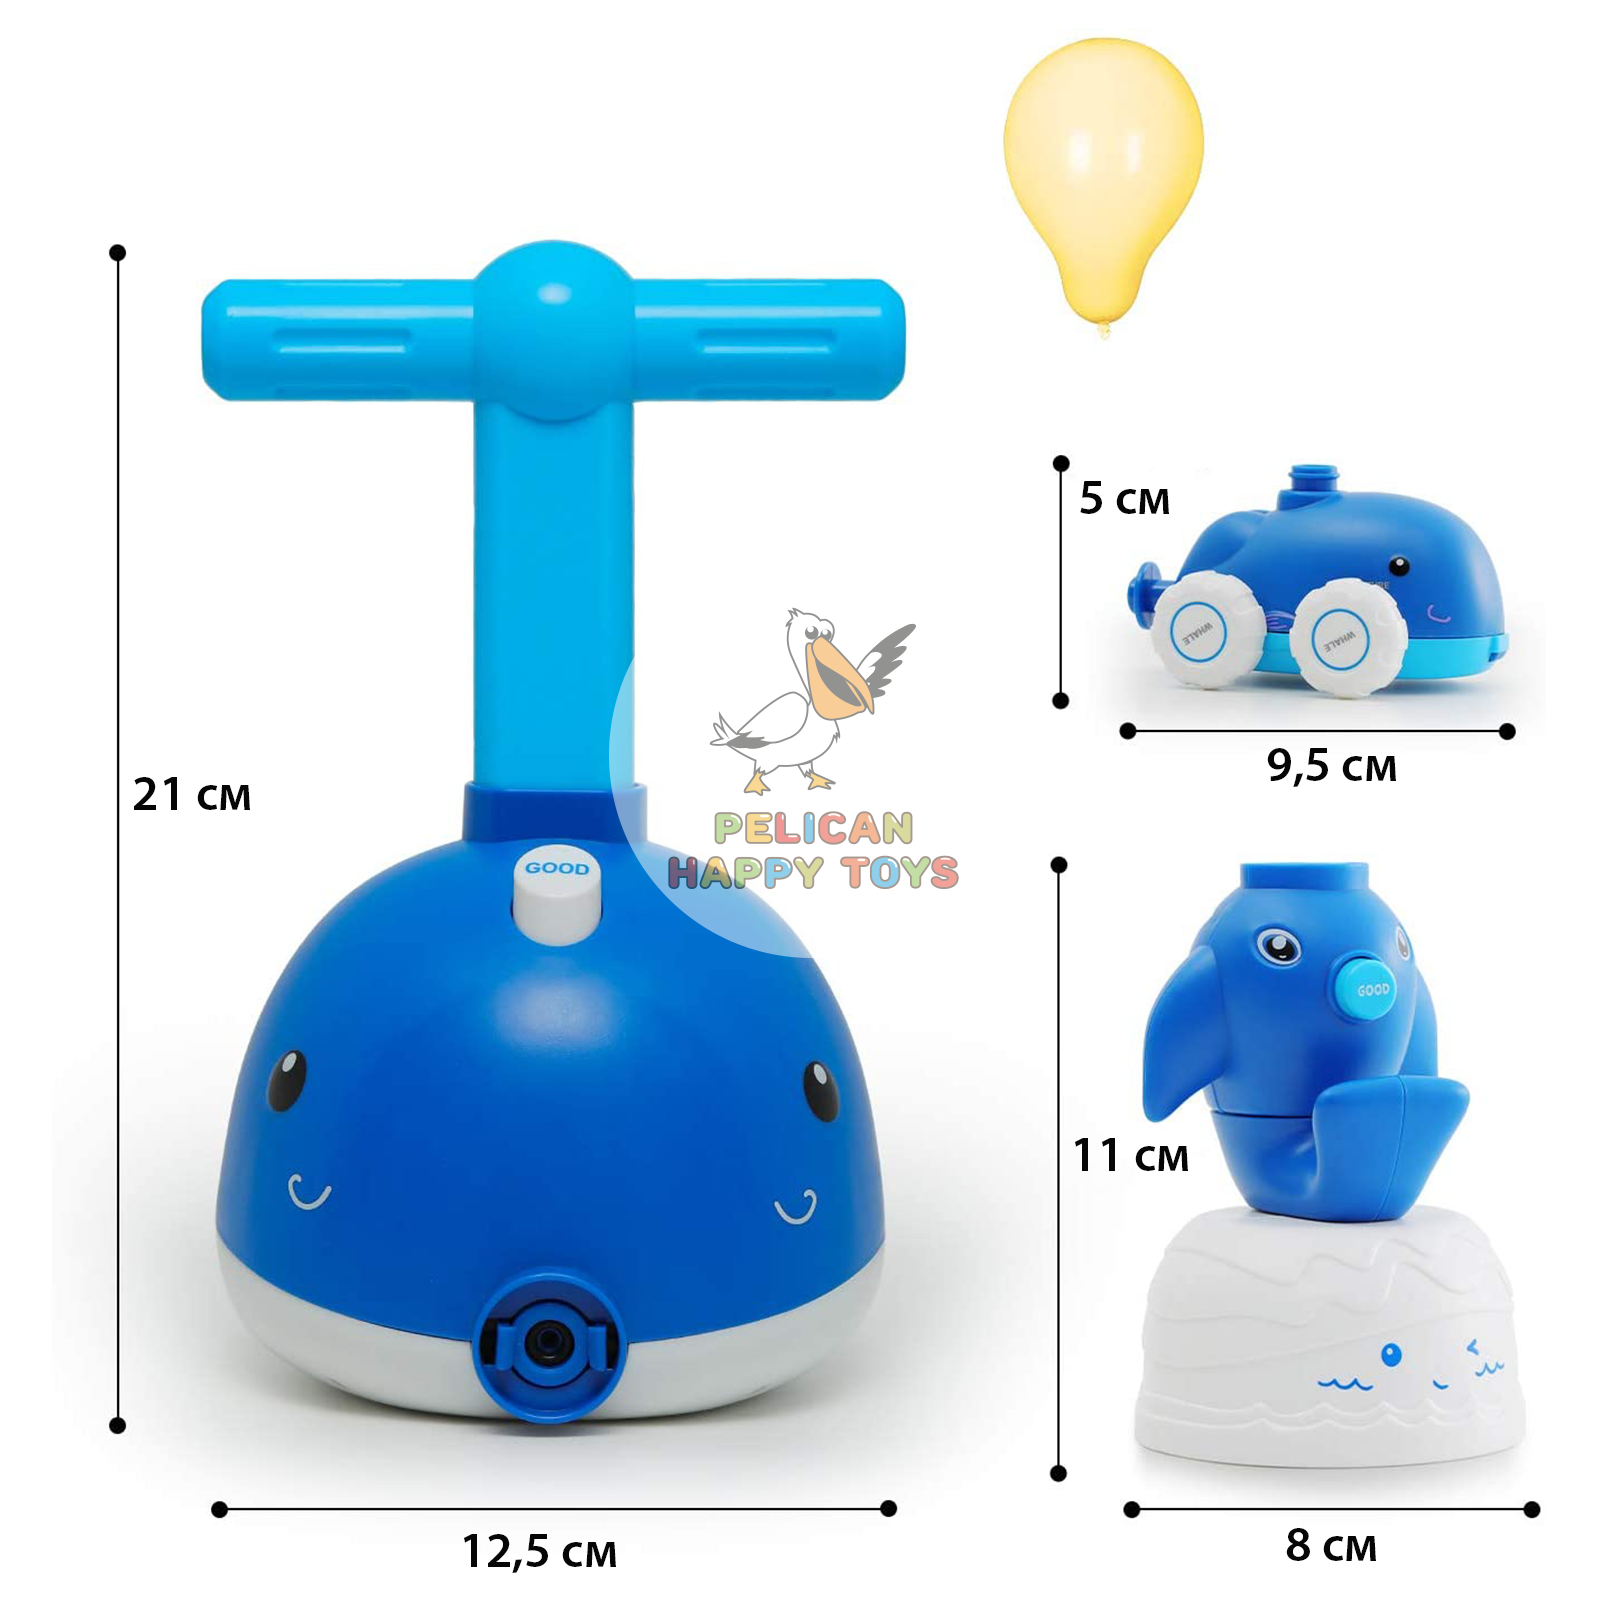 Игровой набор транспорт PELICAN HAPPY TOYS машинки с воздушными шариками для детей - фото 6